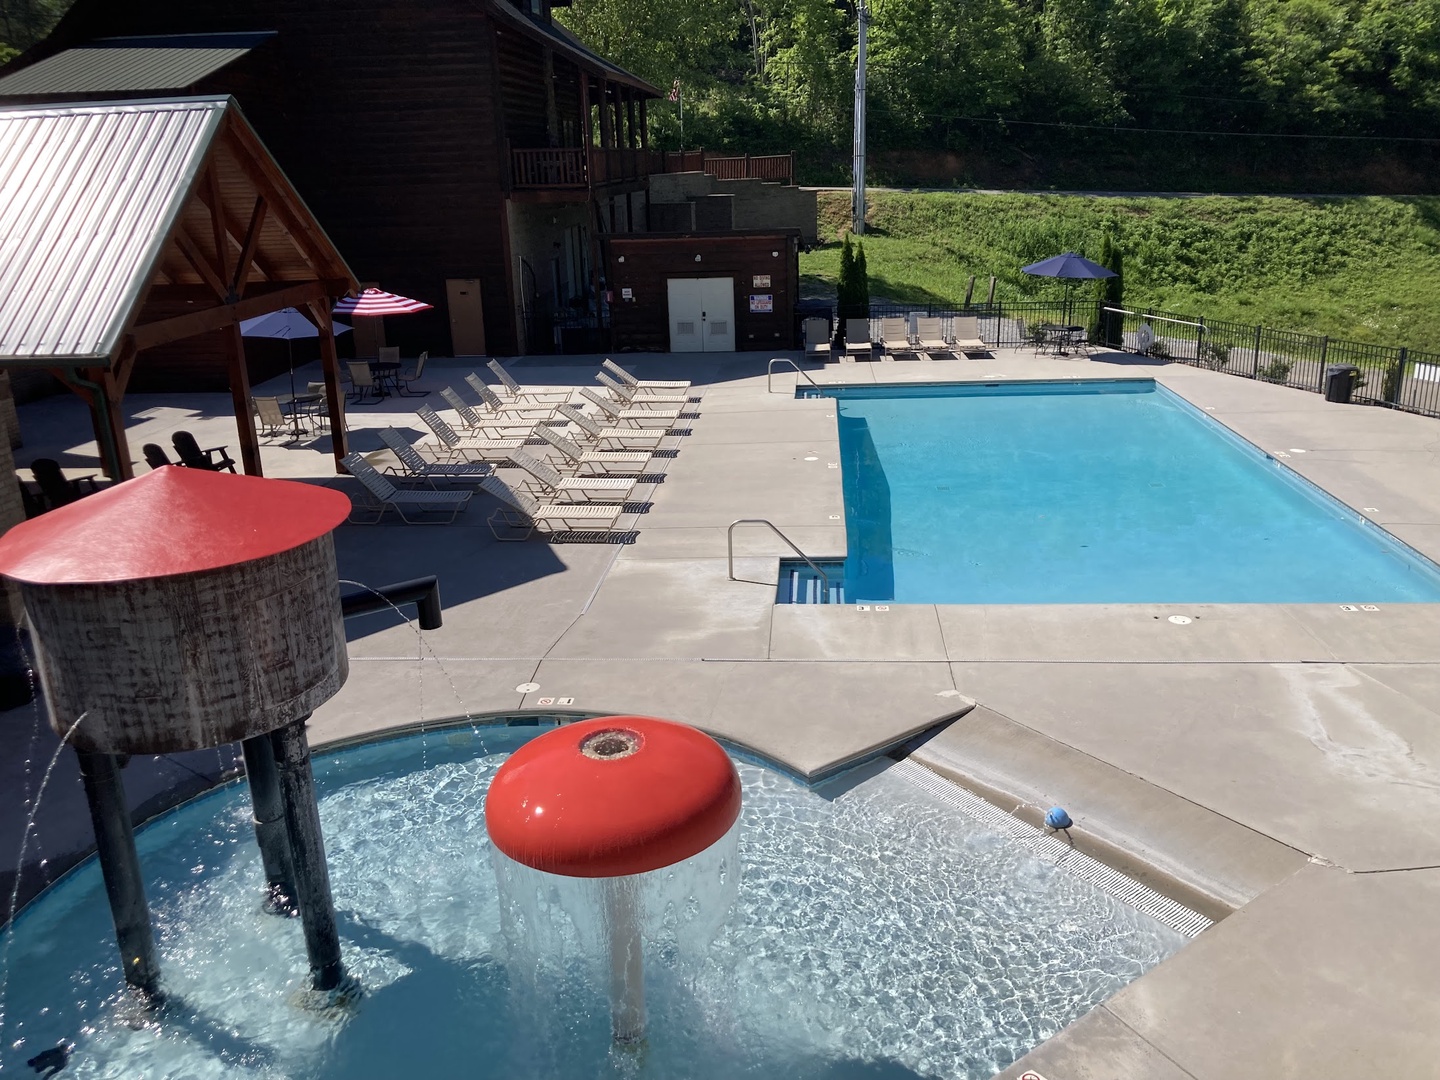 Grand View Resort Pool